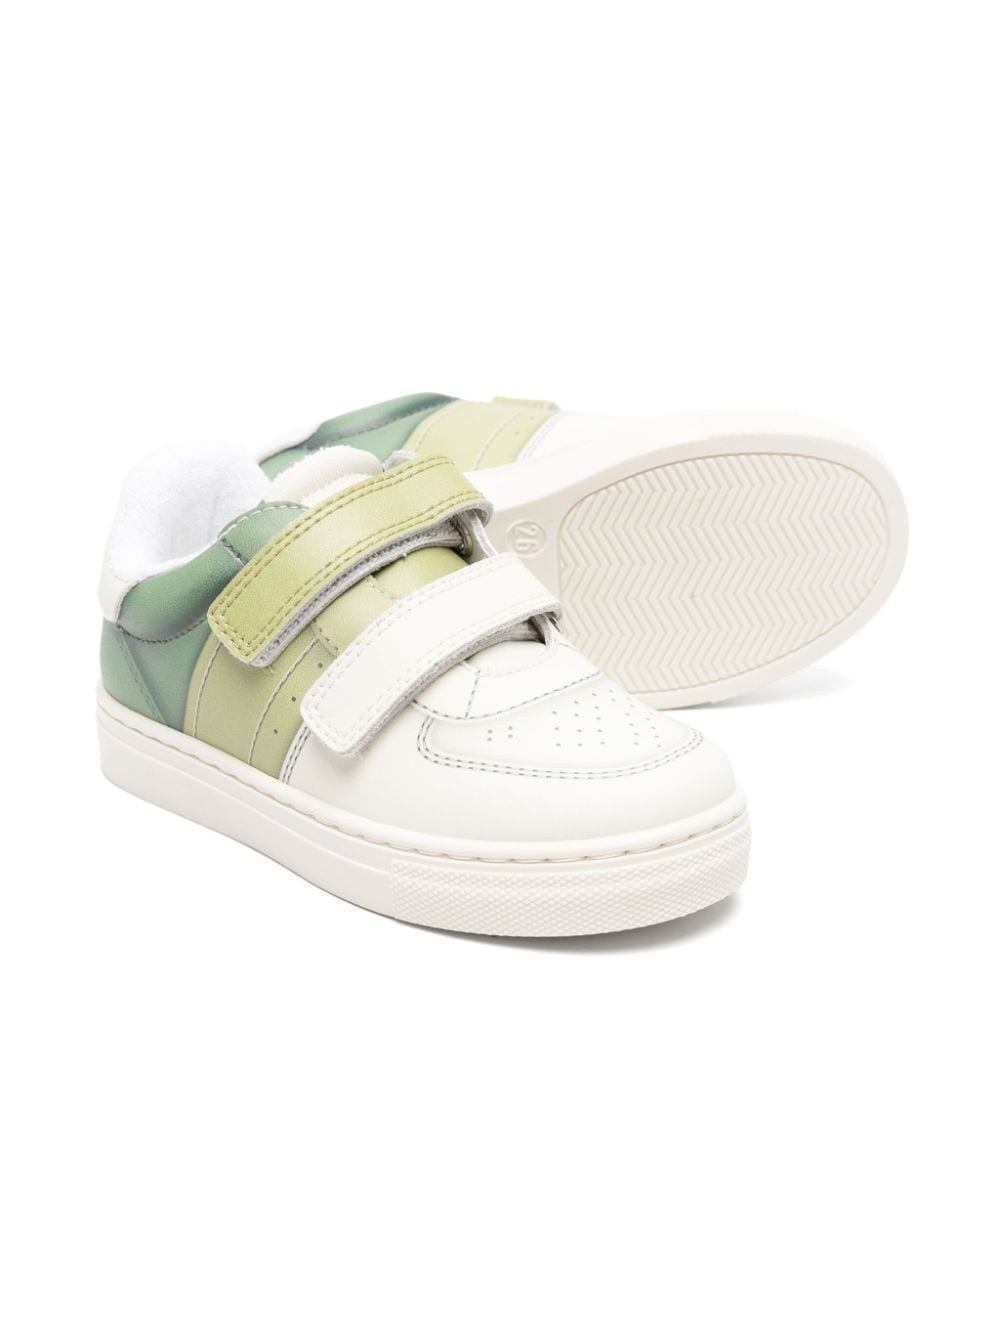 Sneakers bianco/verdi bambino